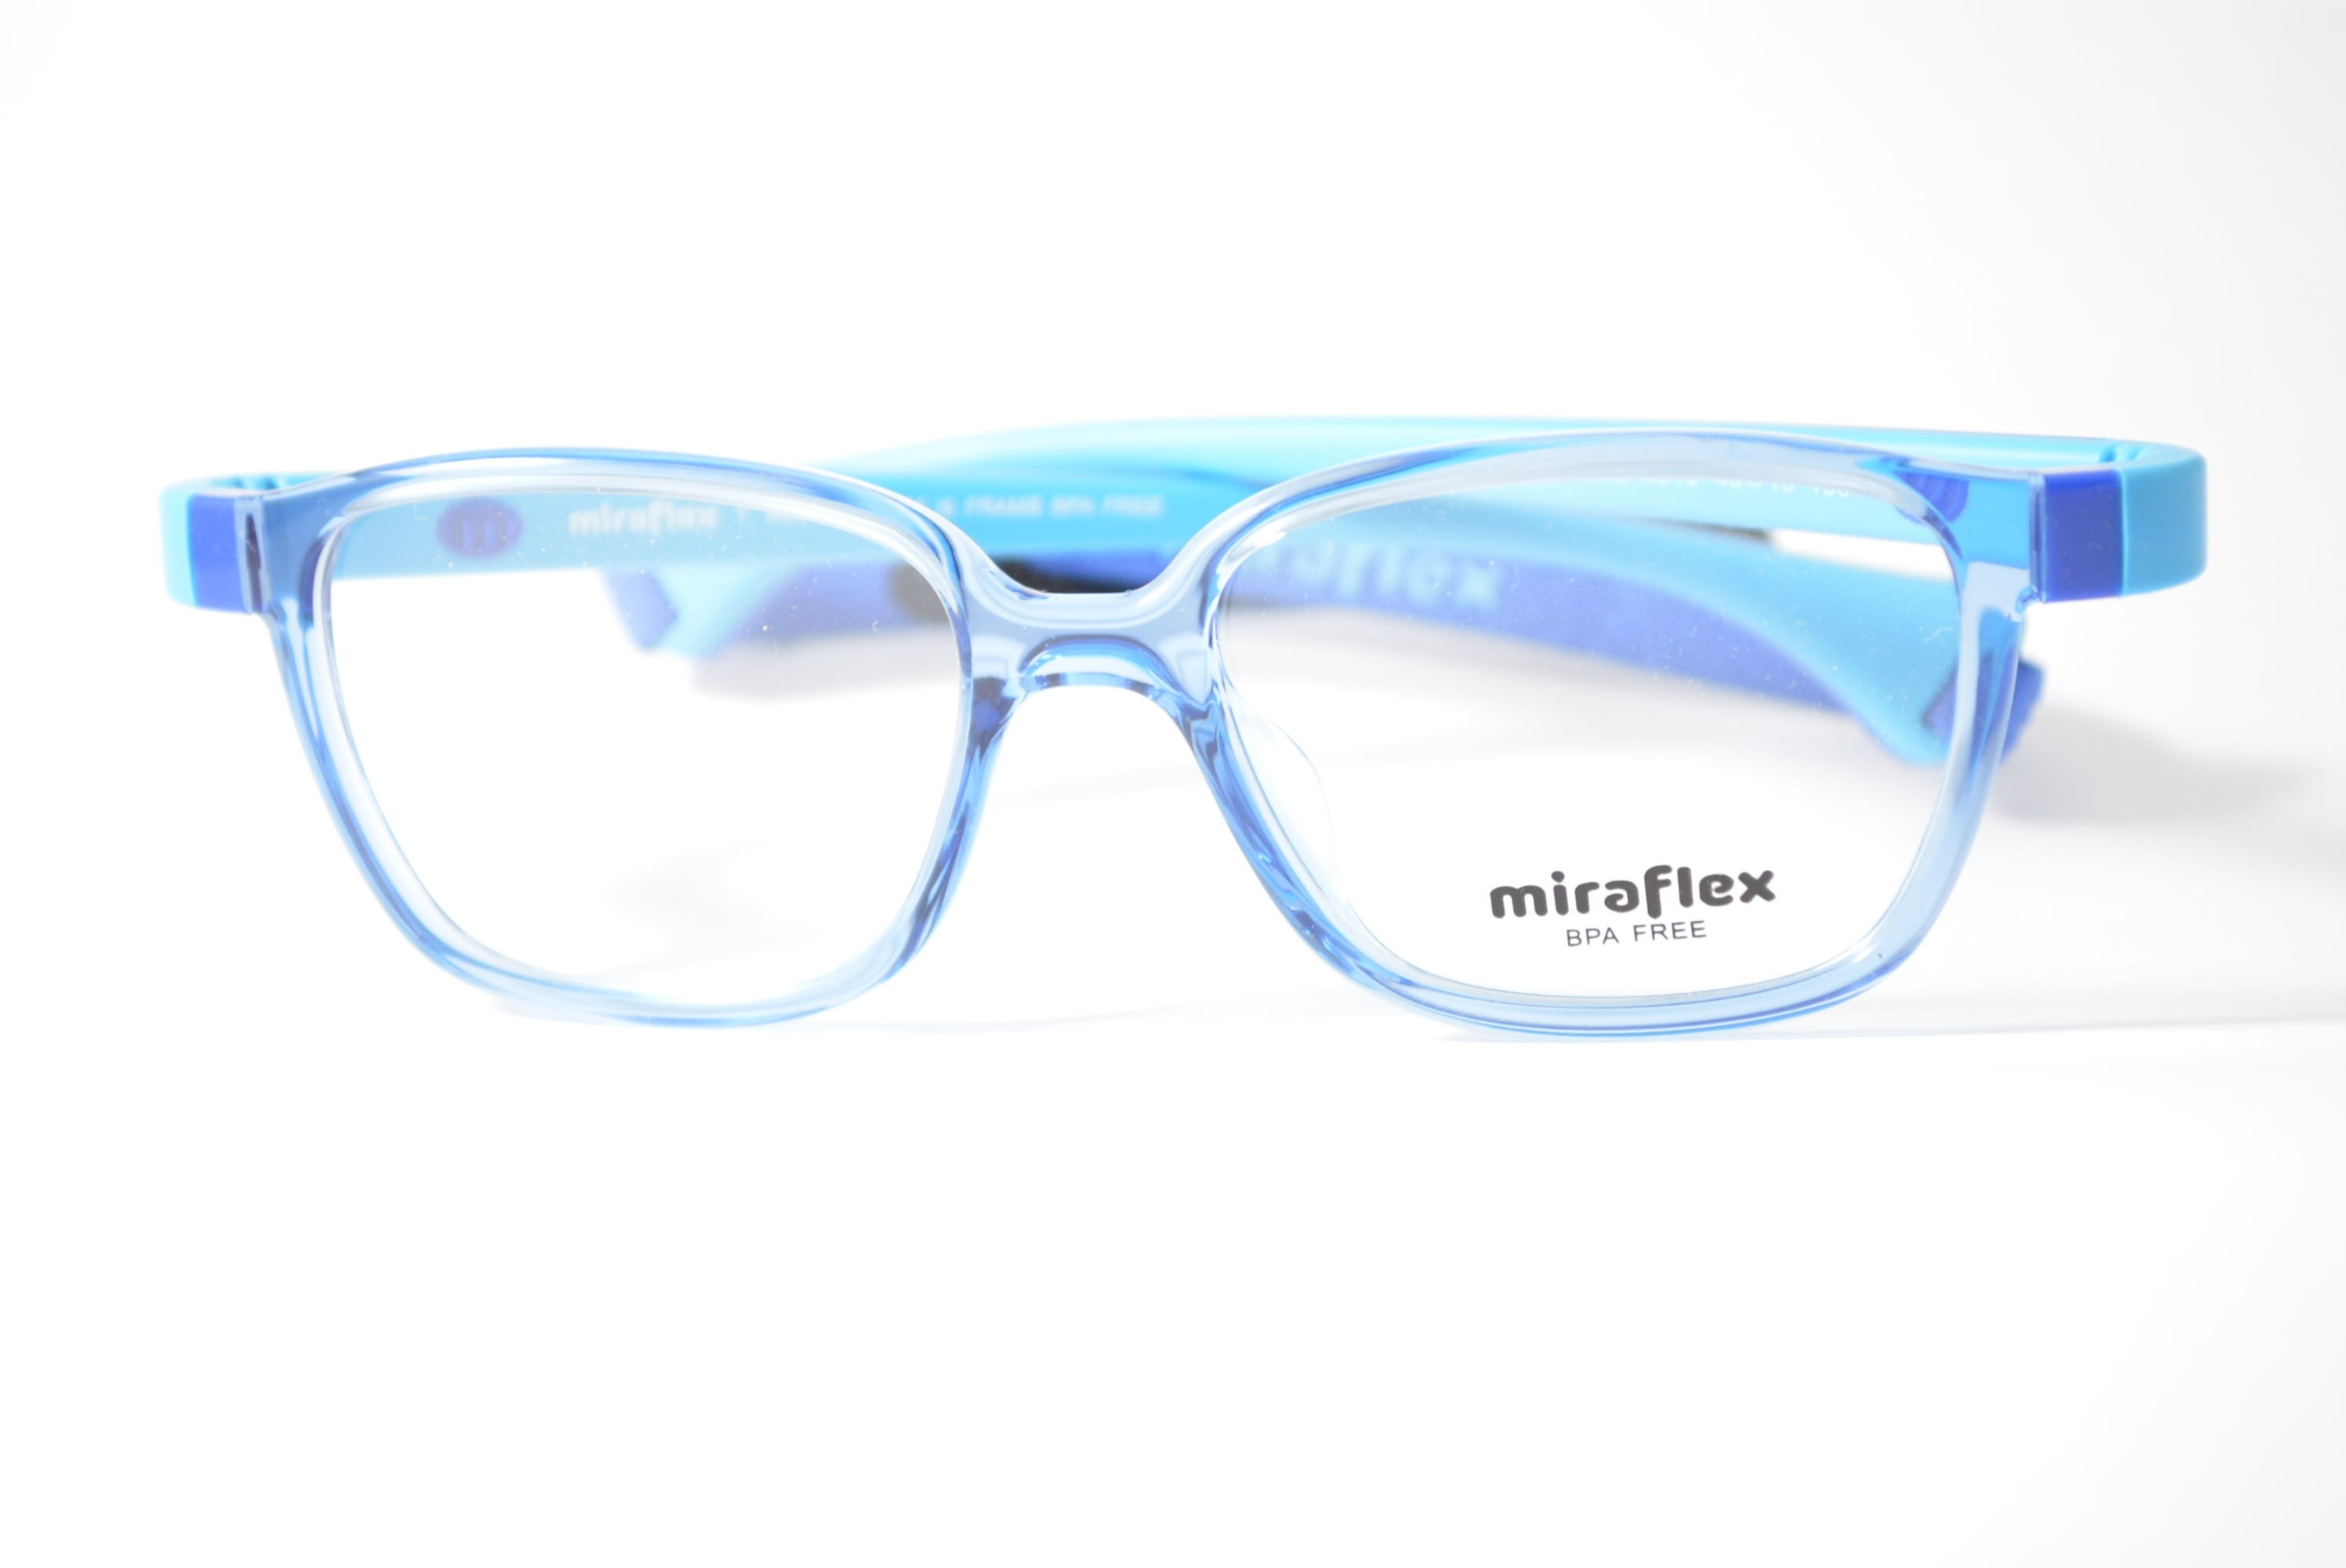 armação de óculos Miraflex mod mf4002 k610 48